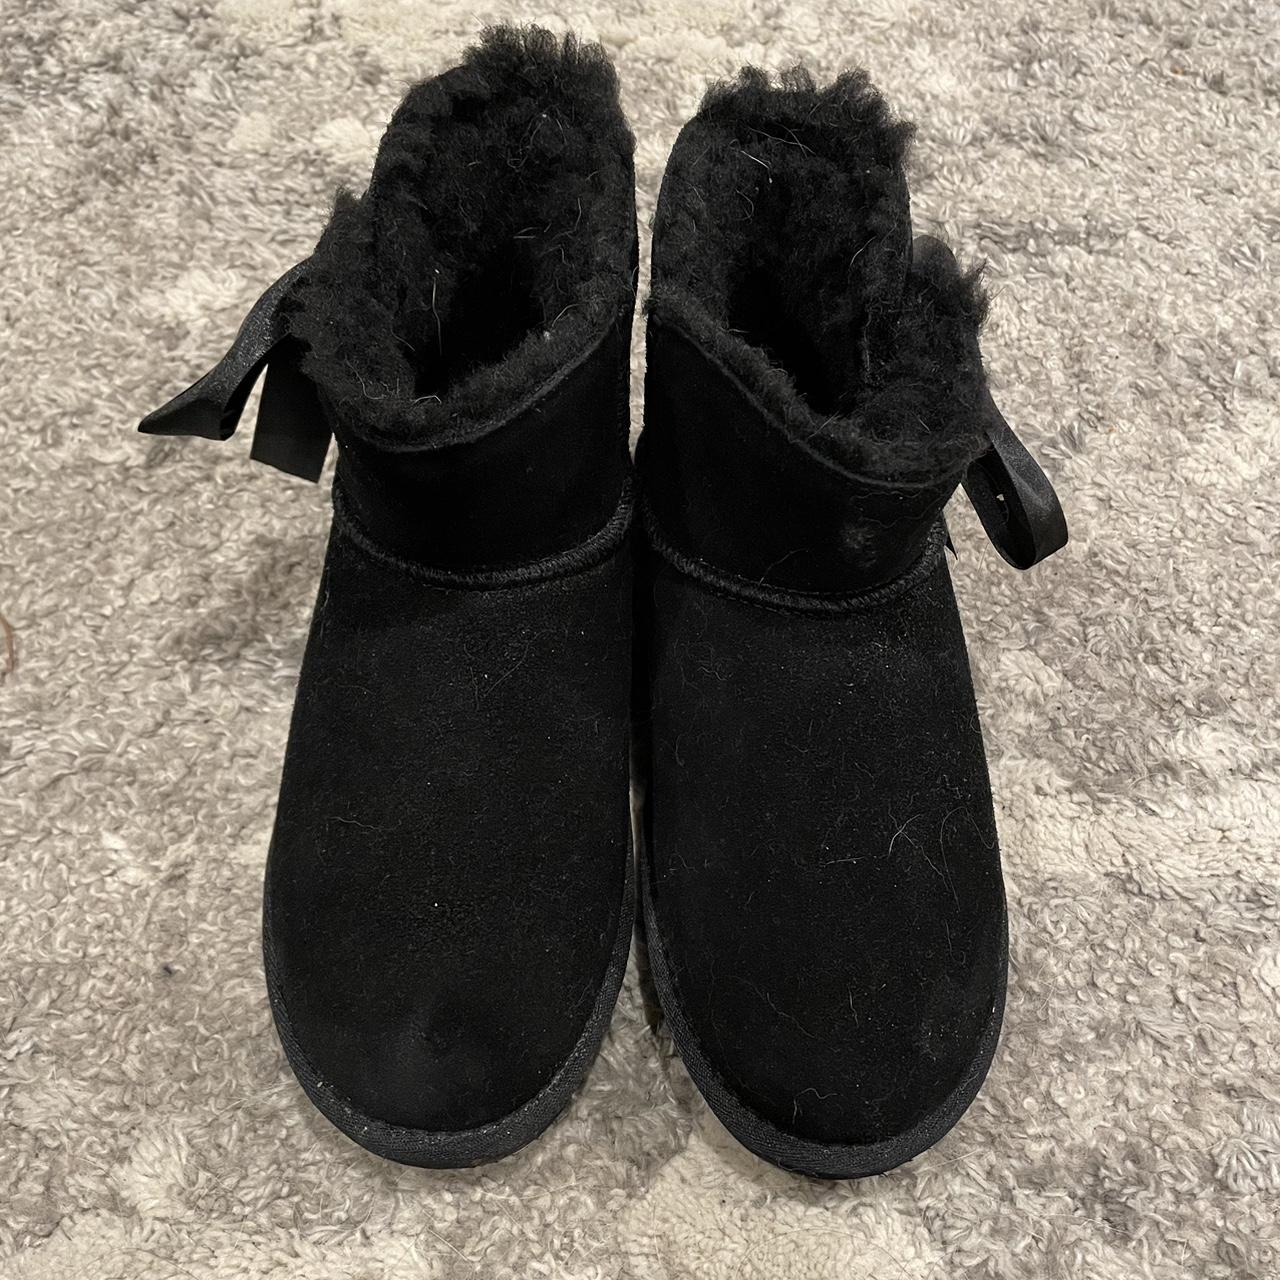 Bearpaw Women's Black Boots (2)